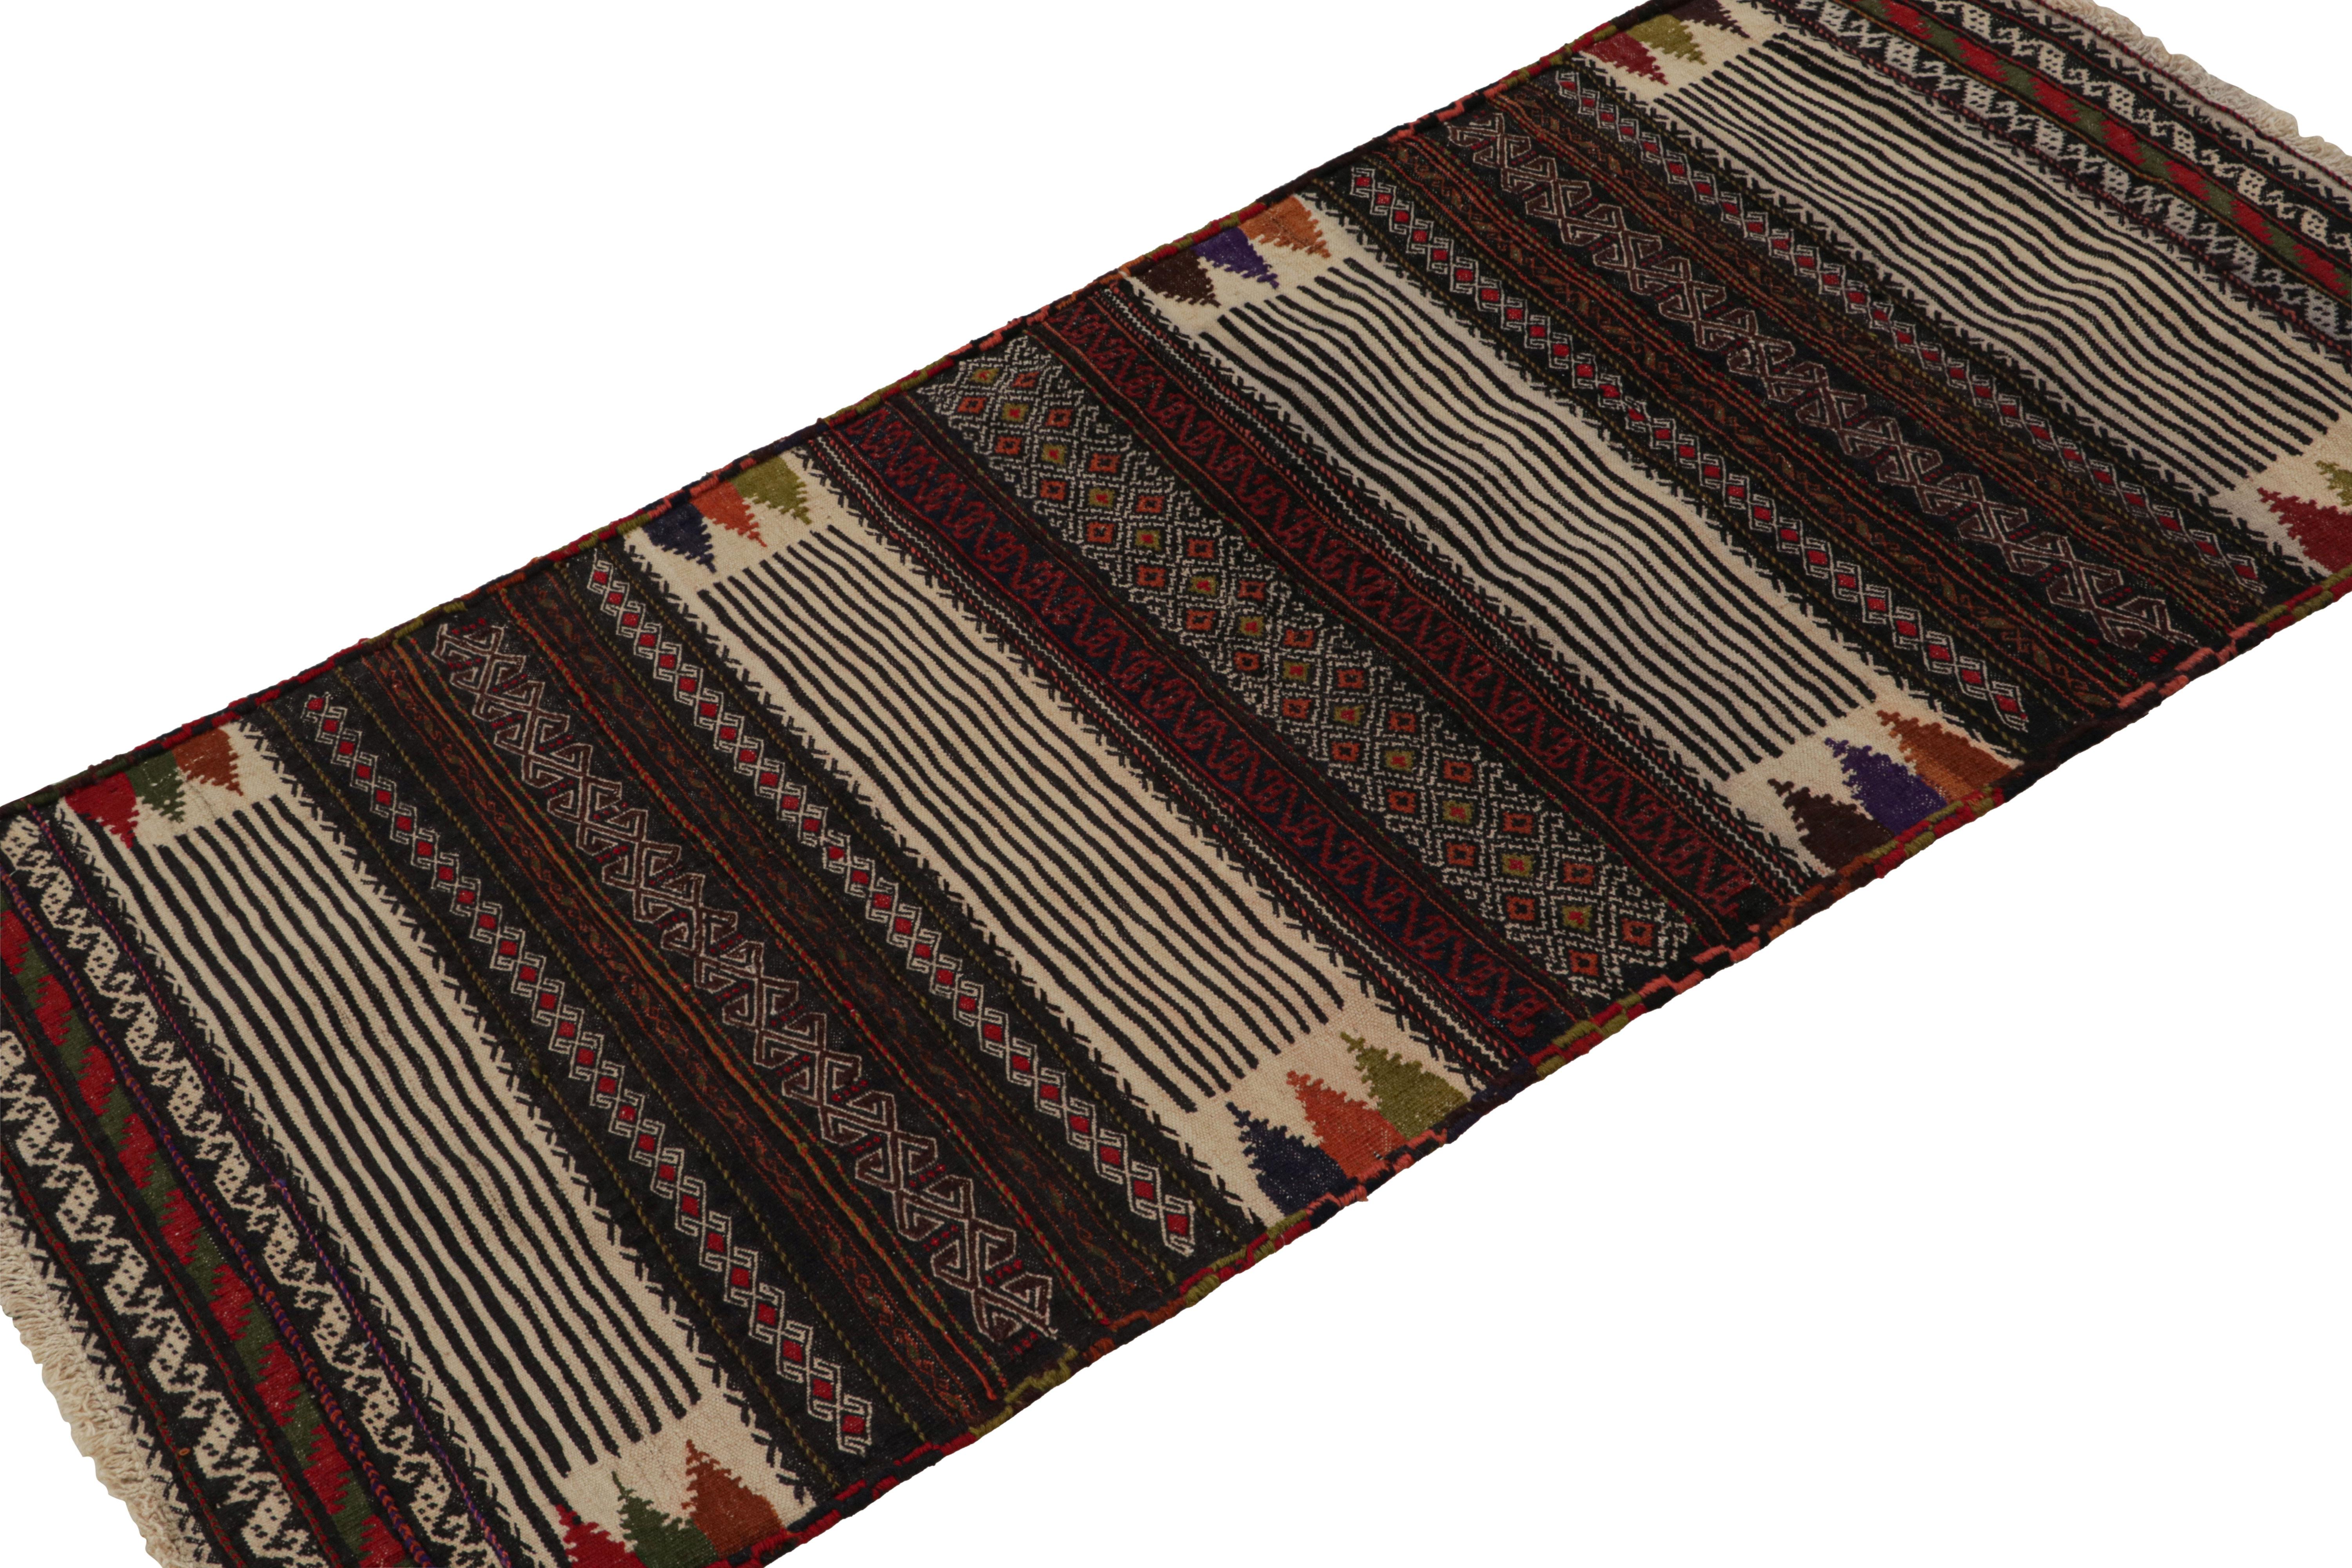 Handgewebte Wolle aus Afghanistan (ca. 1950-1960). Die Größe von 2x5 und das Design deuten darauf hin, dass es sich um ein Tischdesign handelt, das aufgrund seiner Langlebigkeit im Vergleich zu anderen Flachgeweben manchmal zum Essen verwendet